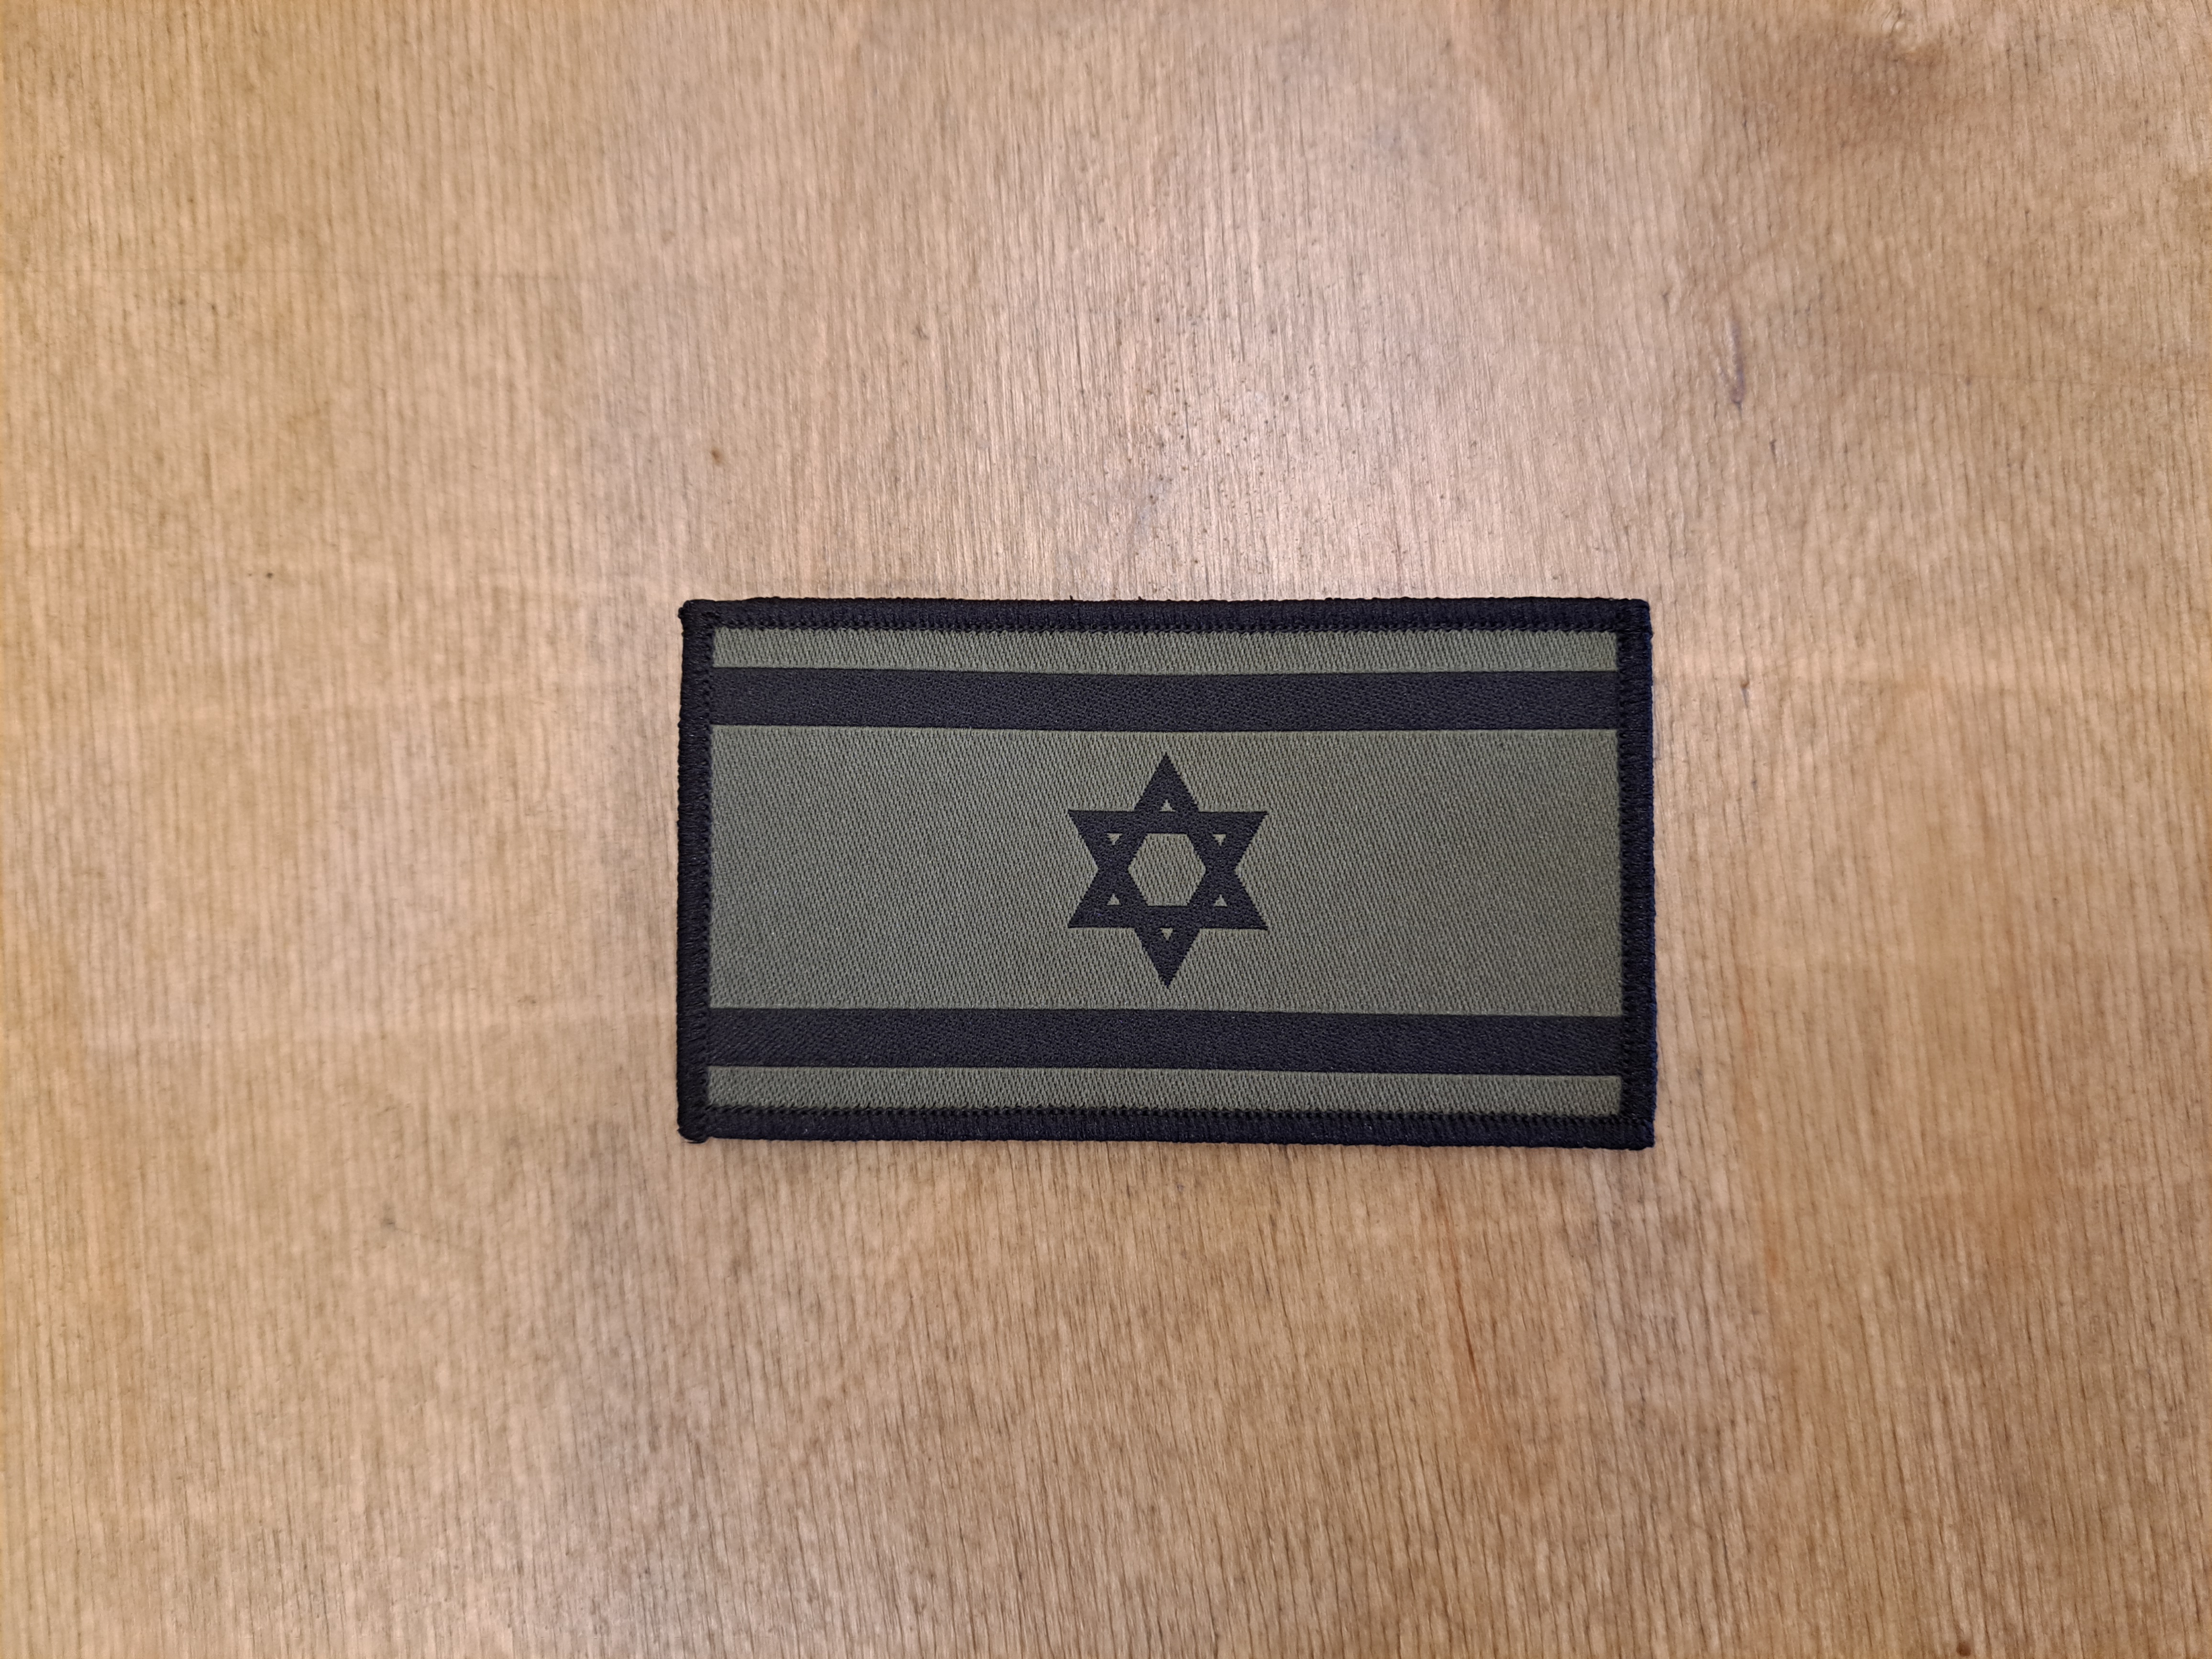 Патч флаг Израиля на липучке